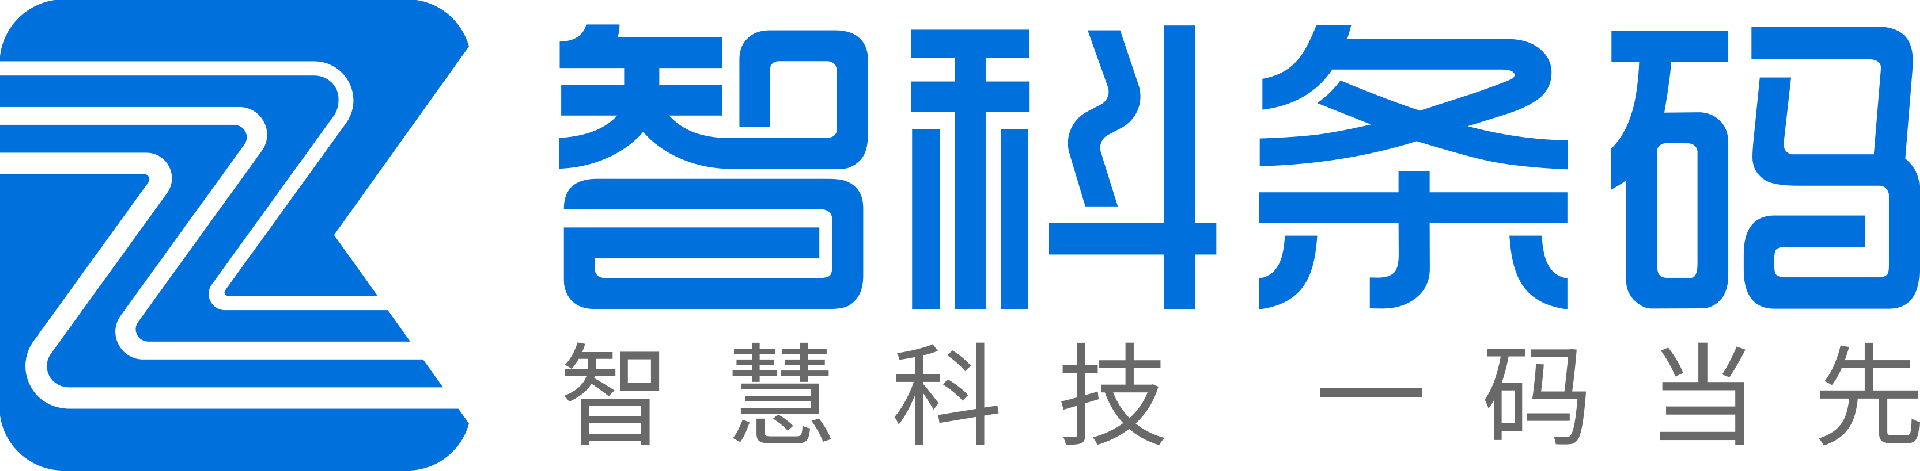 深圳市智科条码技术有限公司-自动标识与数据采集设备供应商